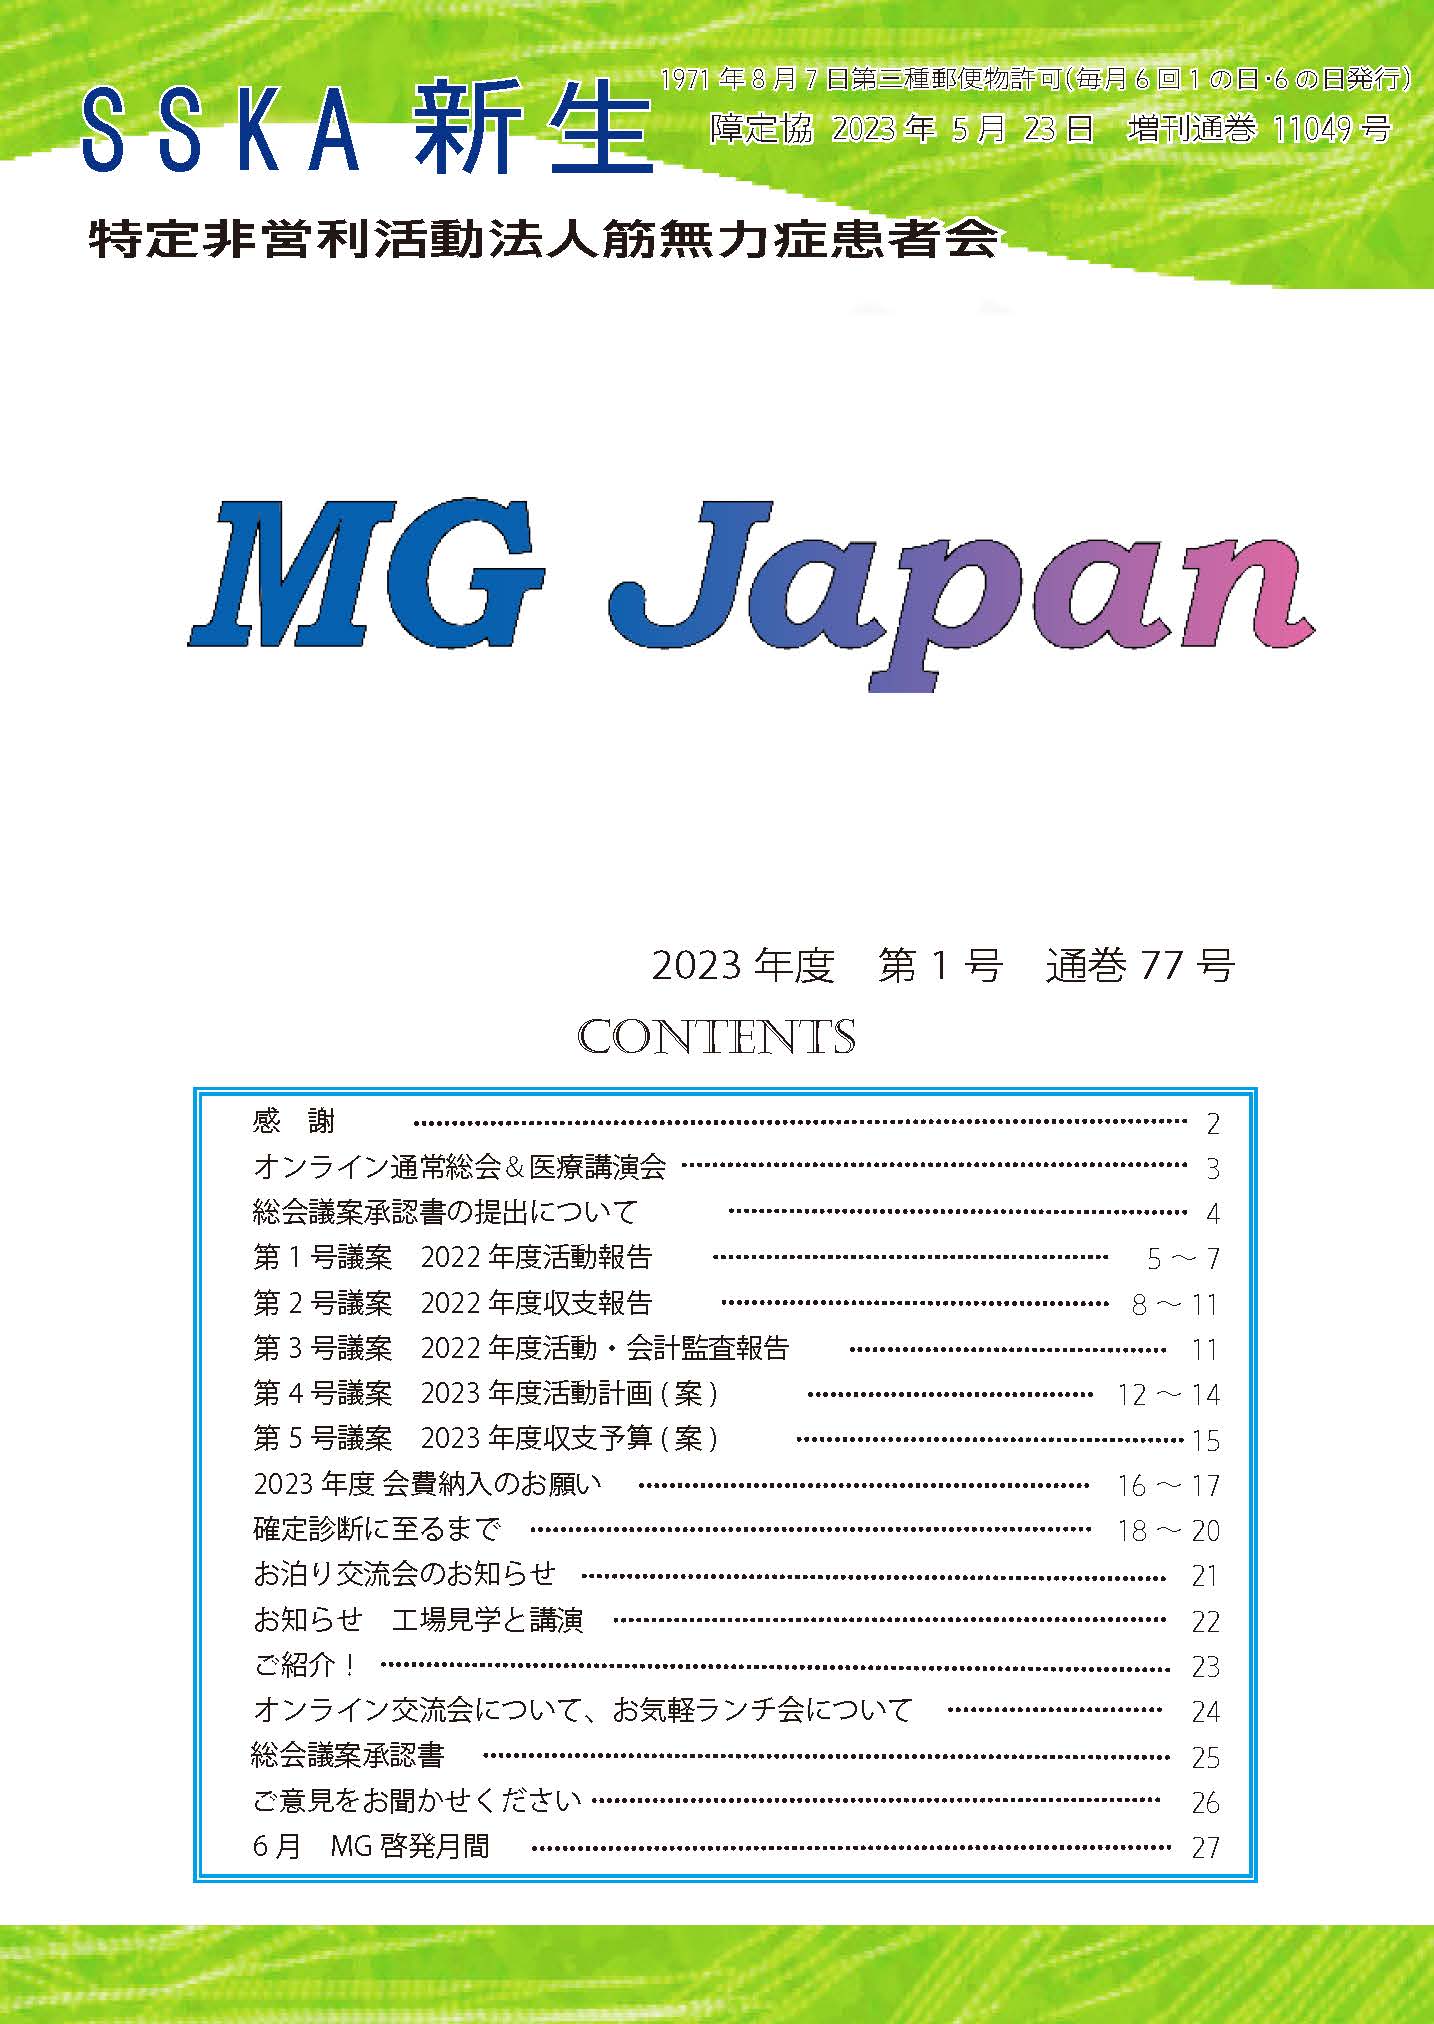 会報「MG Japan77号」